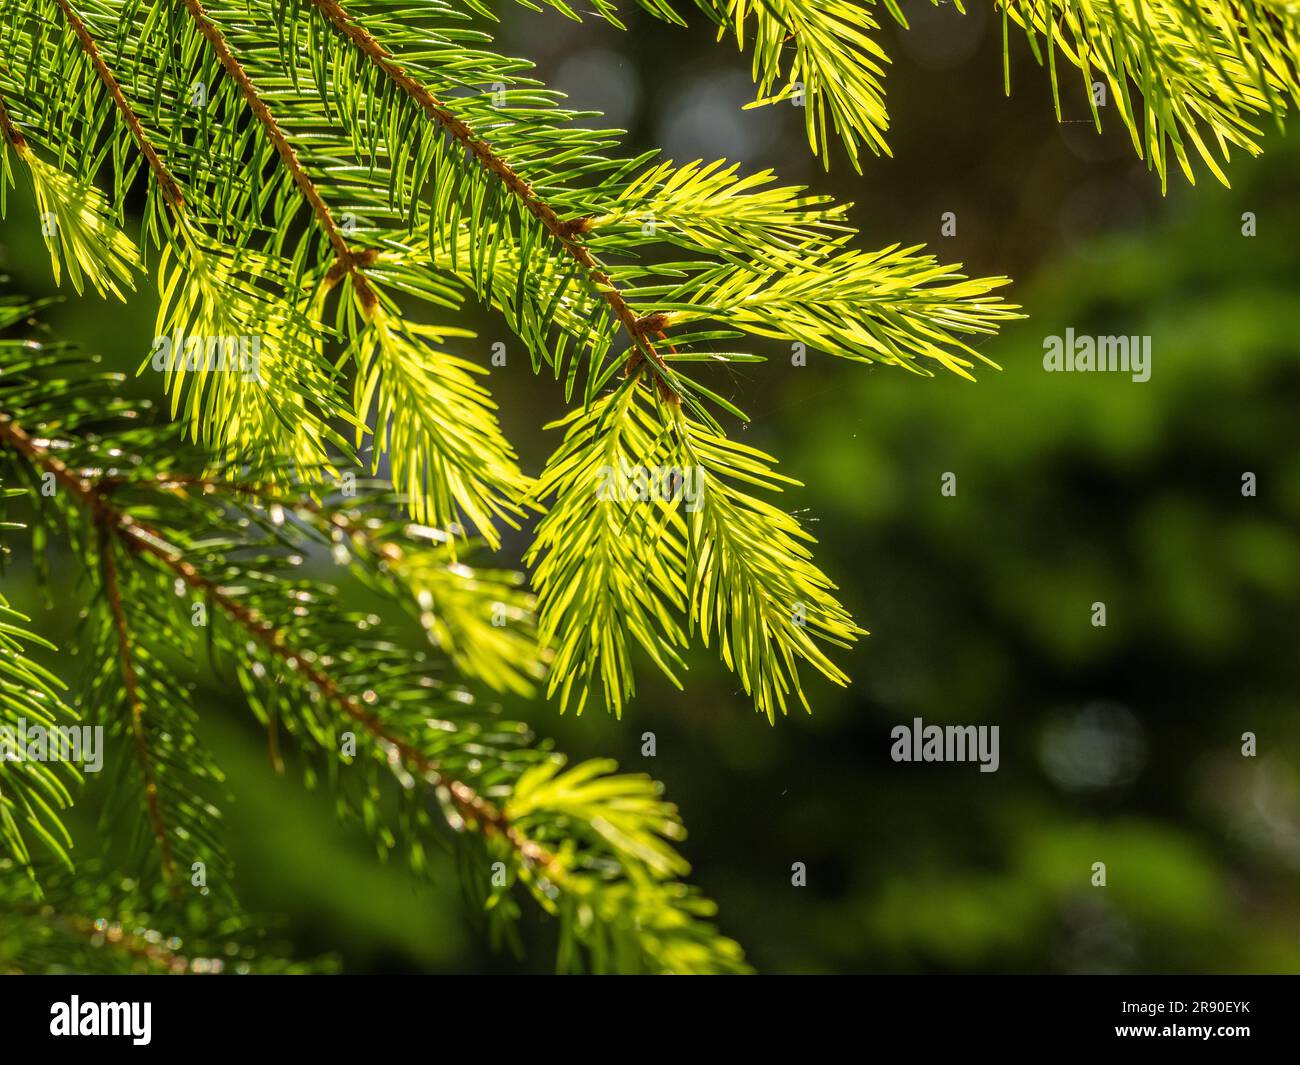 Close-up of backlit fir needles on a fir tree growing in a UK garden. Stock Photo